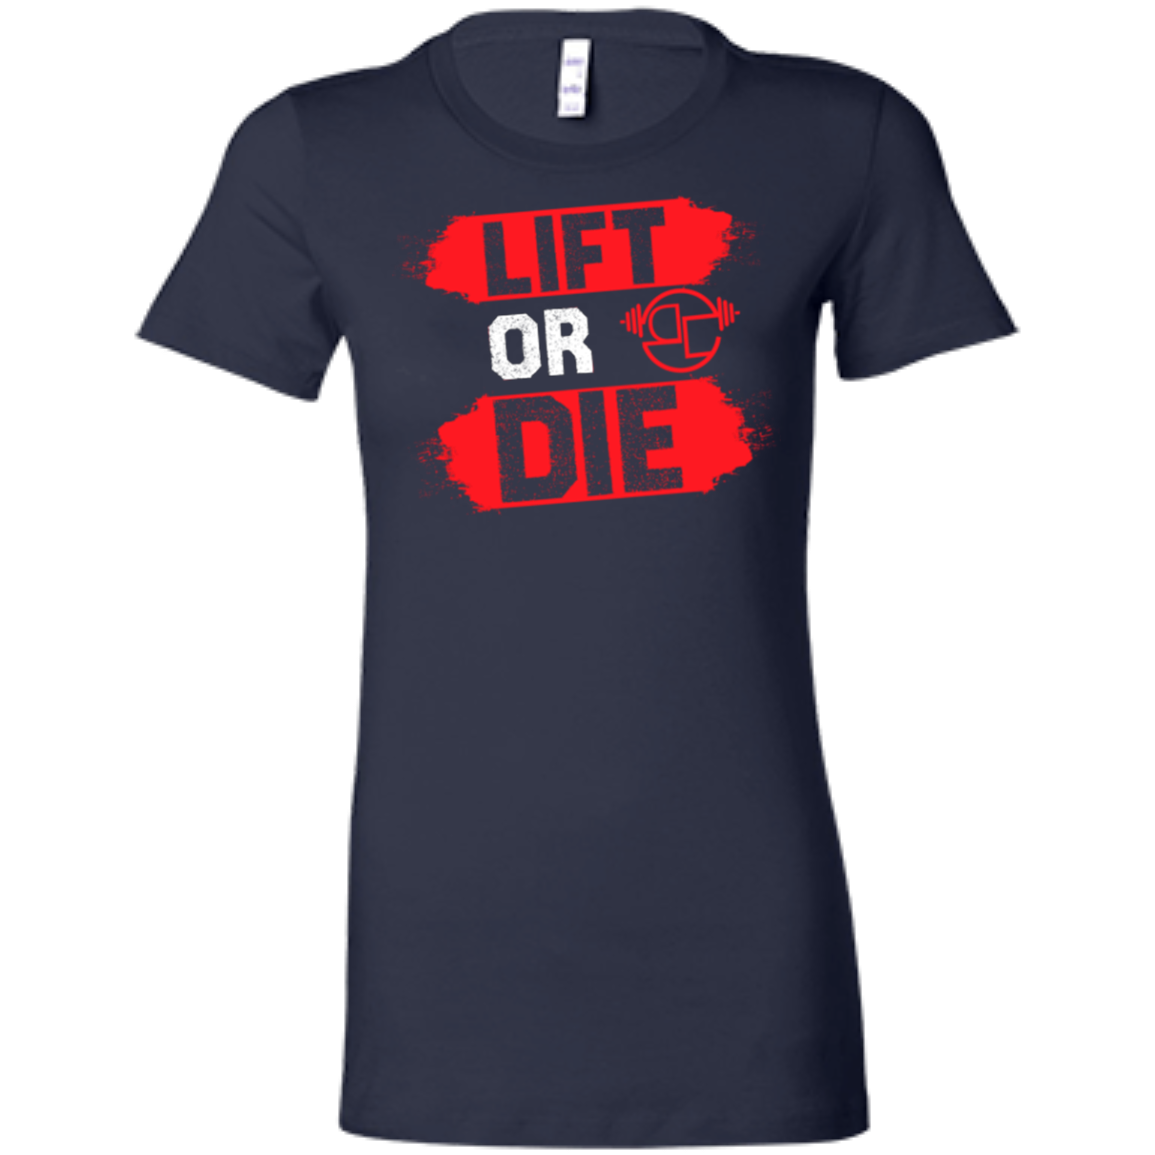 Lift or Die ladies T-Shirt